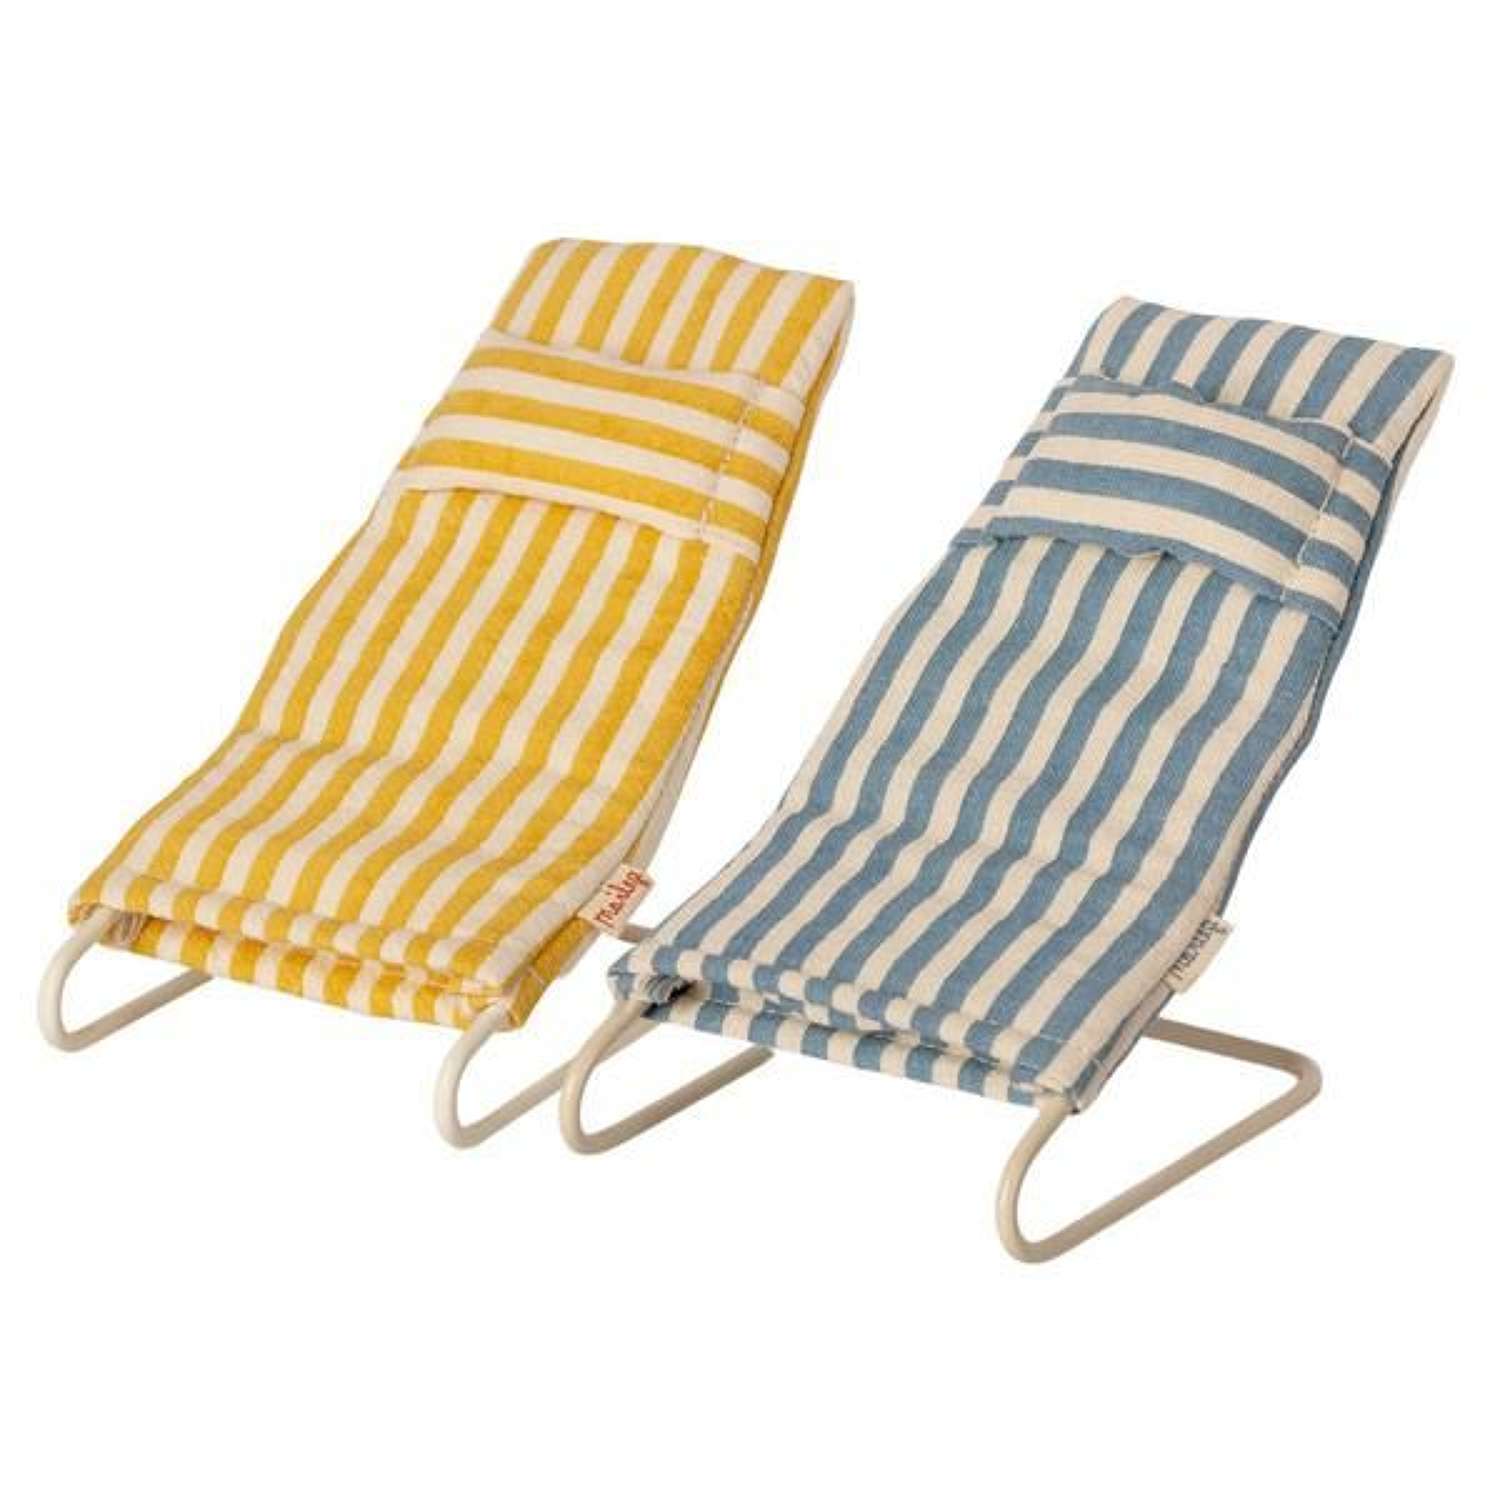 Maileg- Beach chair set -  pair of striped beach chairs